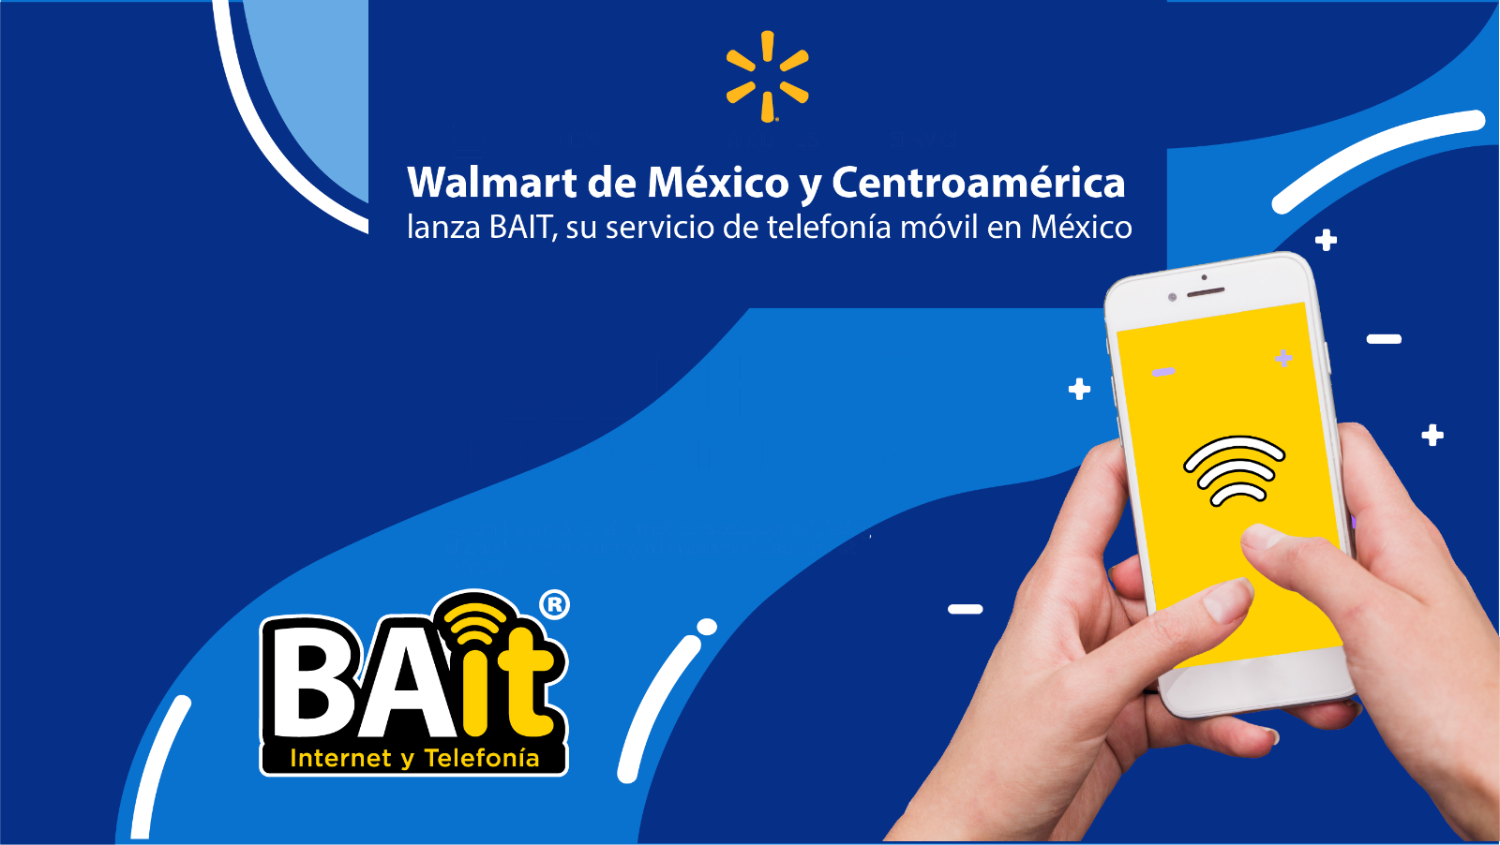 Walmart de México y Centroamérica lanza BAIT, su servicio de